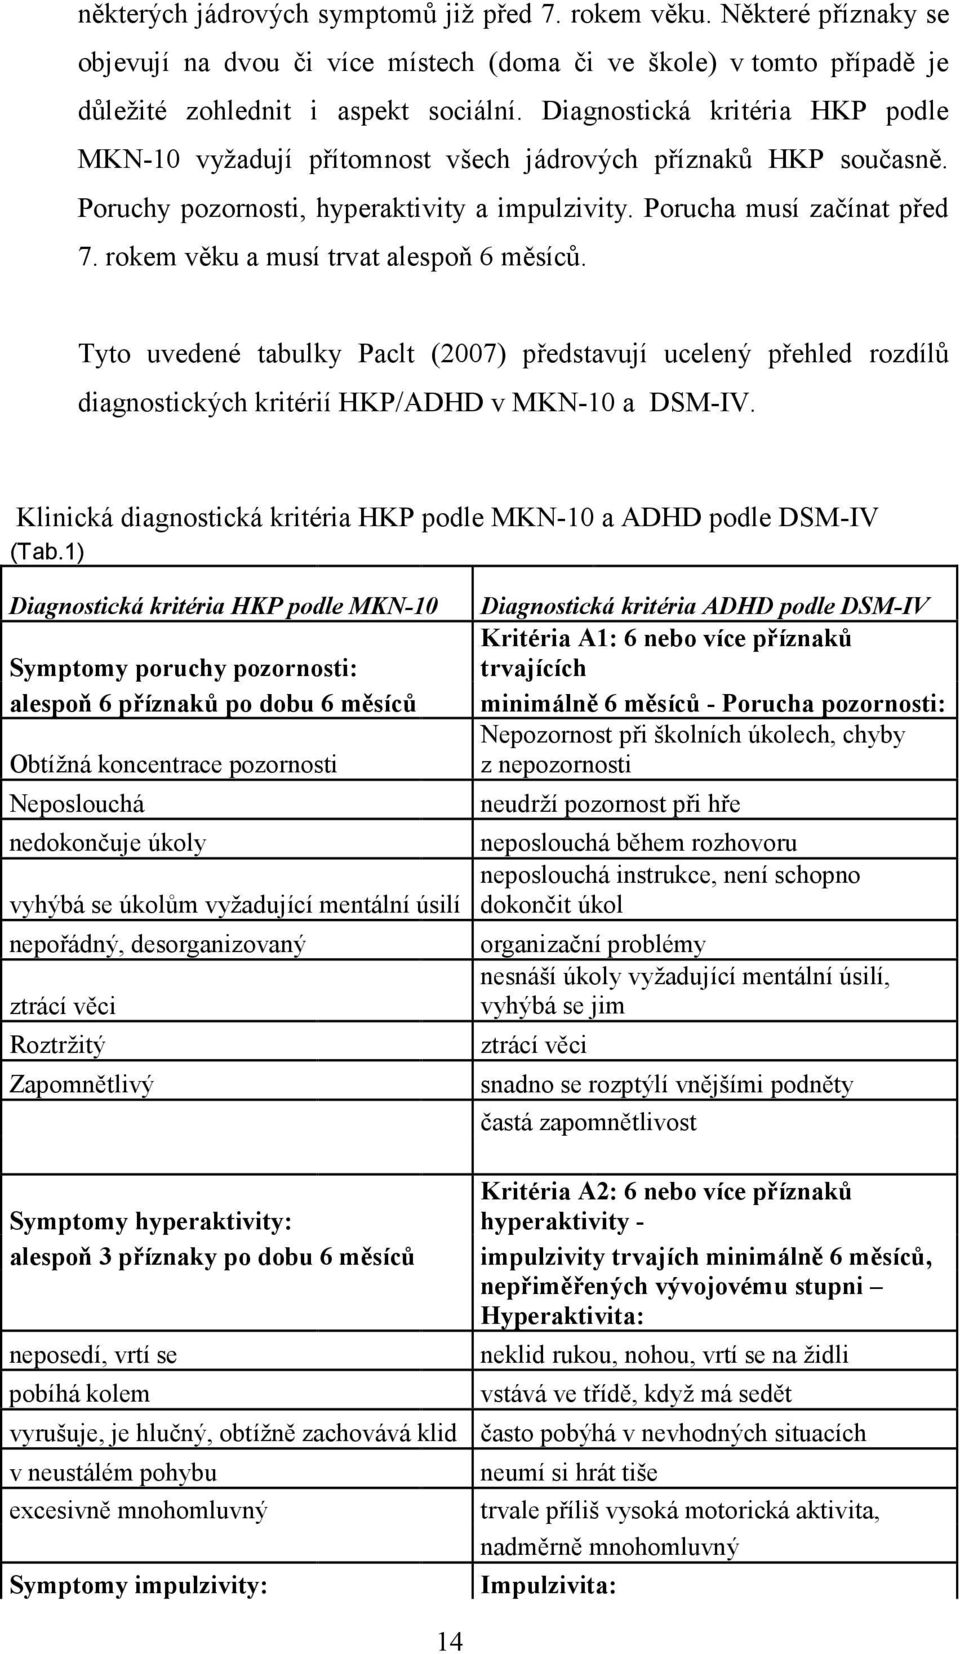 rokem věku a musí trvat alespoň 6 měsíců. Tyto uvedené tabulky Paclt (2007) představují ucelený přehled rozdílů diagnostických kritérií HKP/ADHD v MKN-10 a DSM-IV.